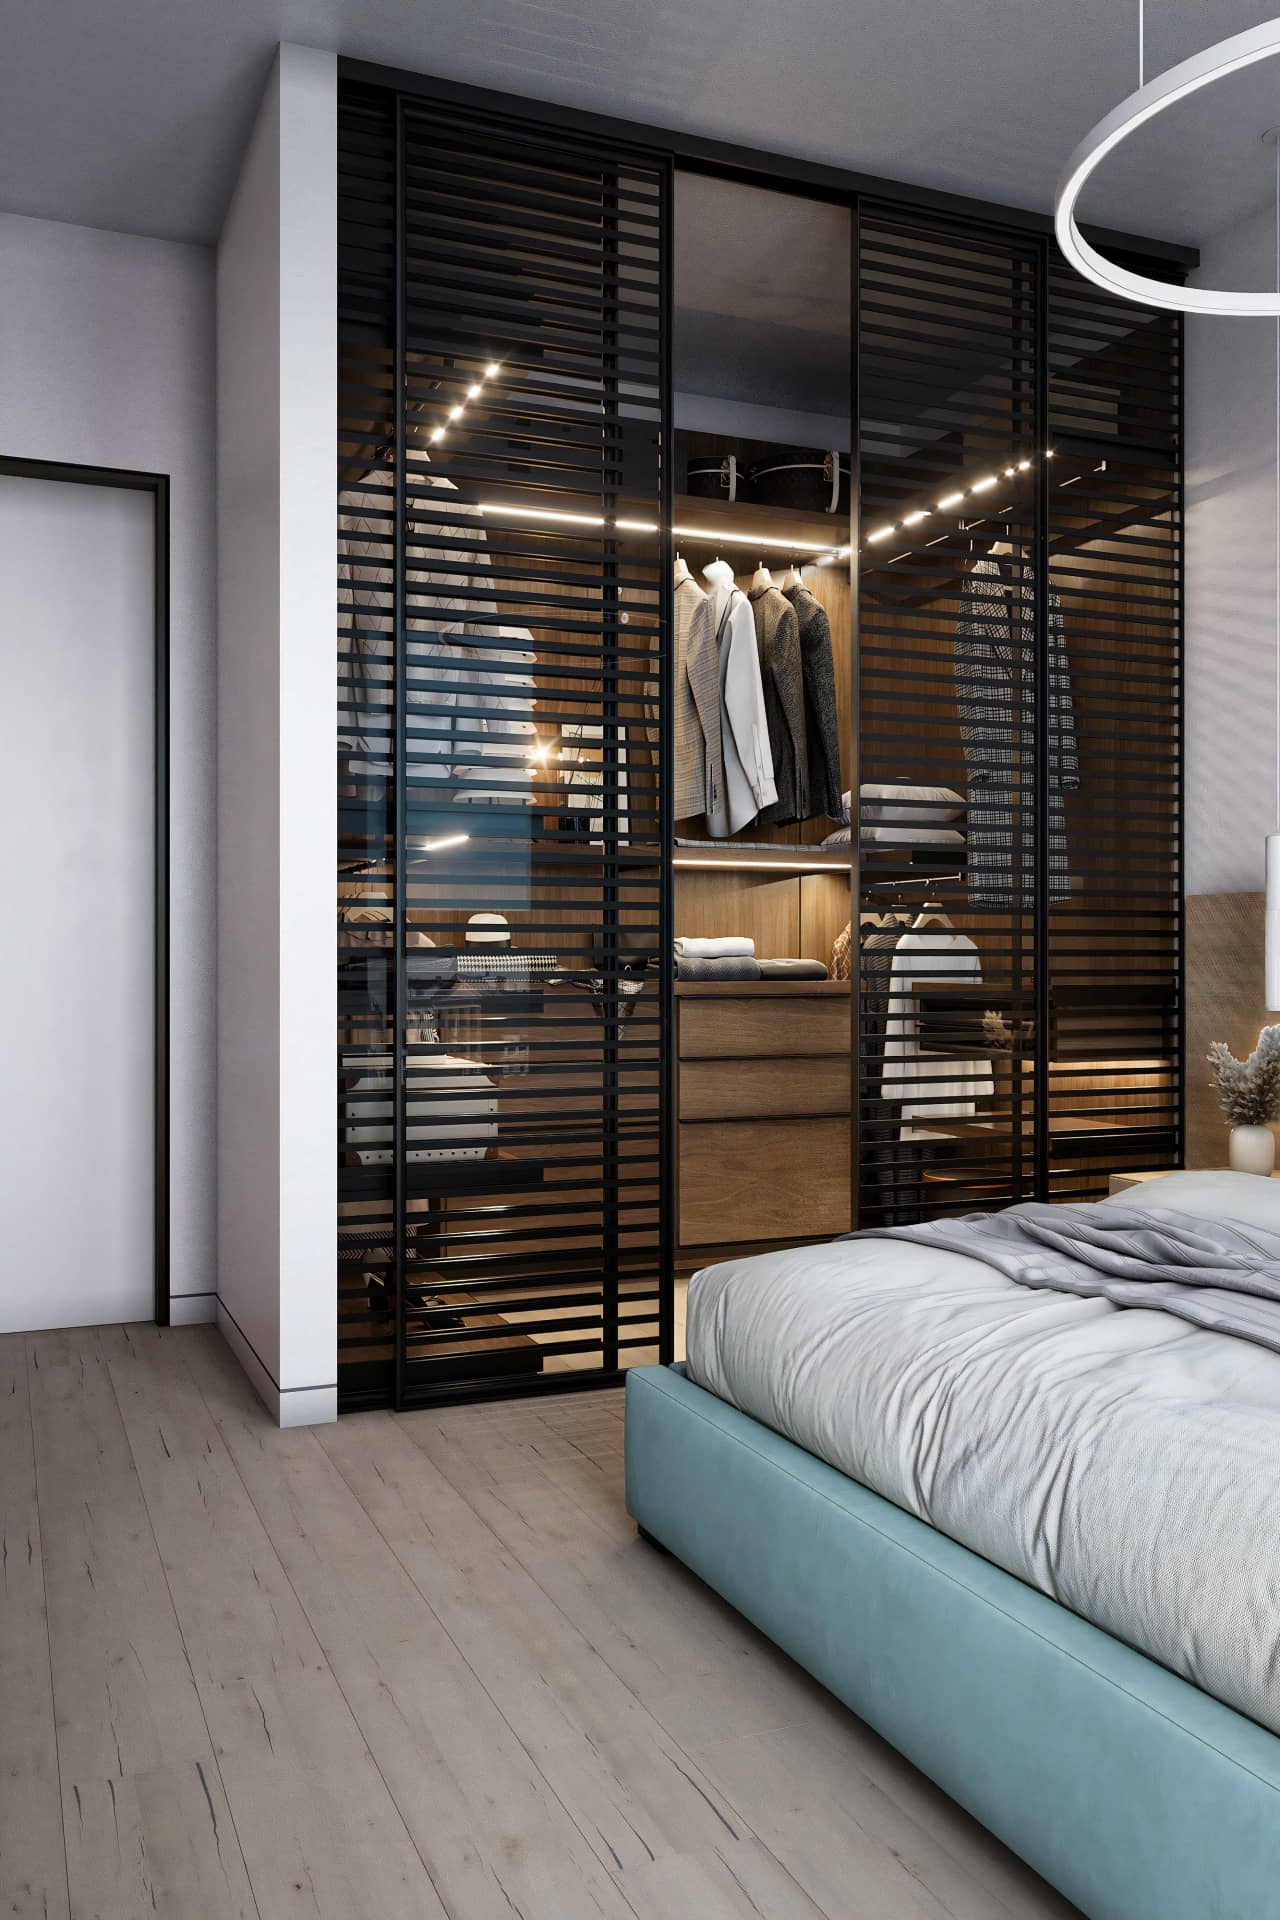 Дизайн интерьера спальни с гардеробной